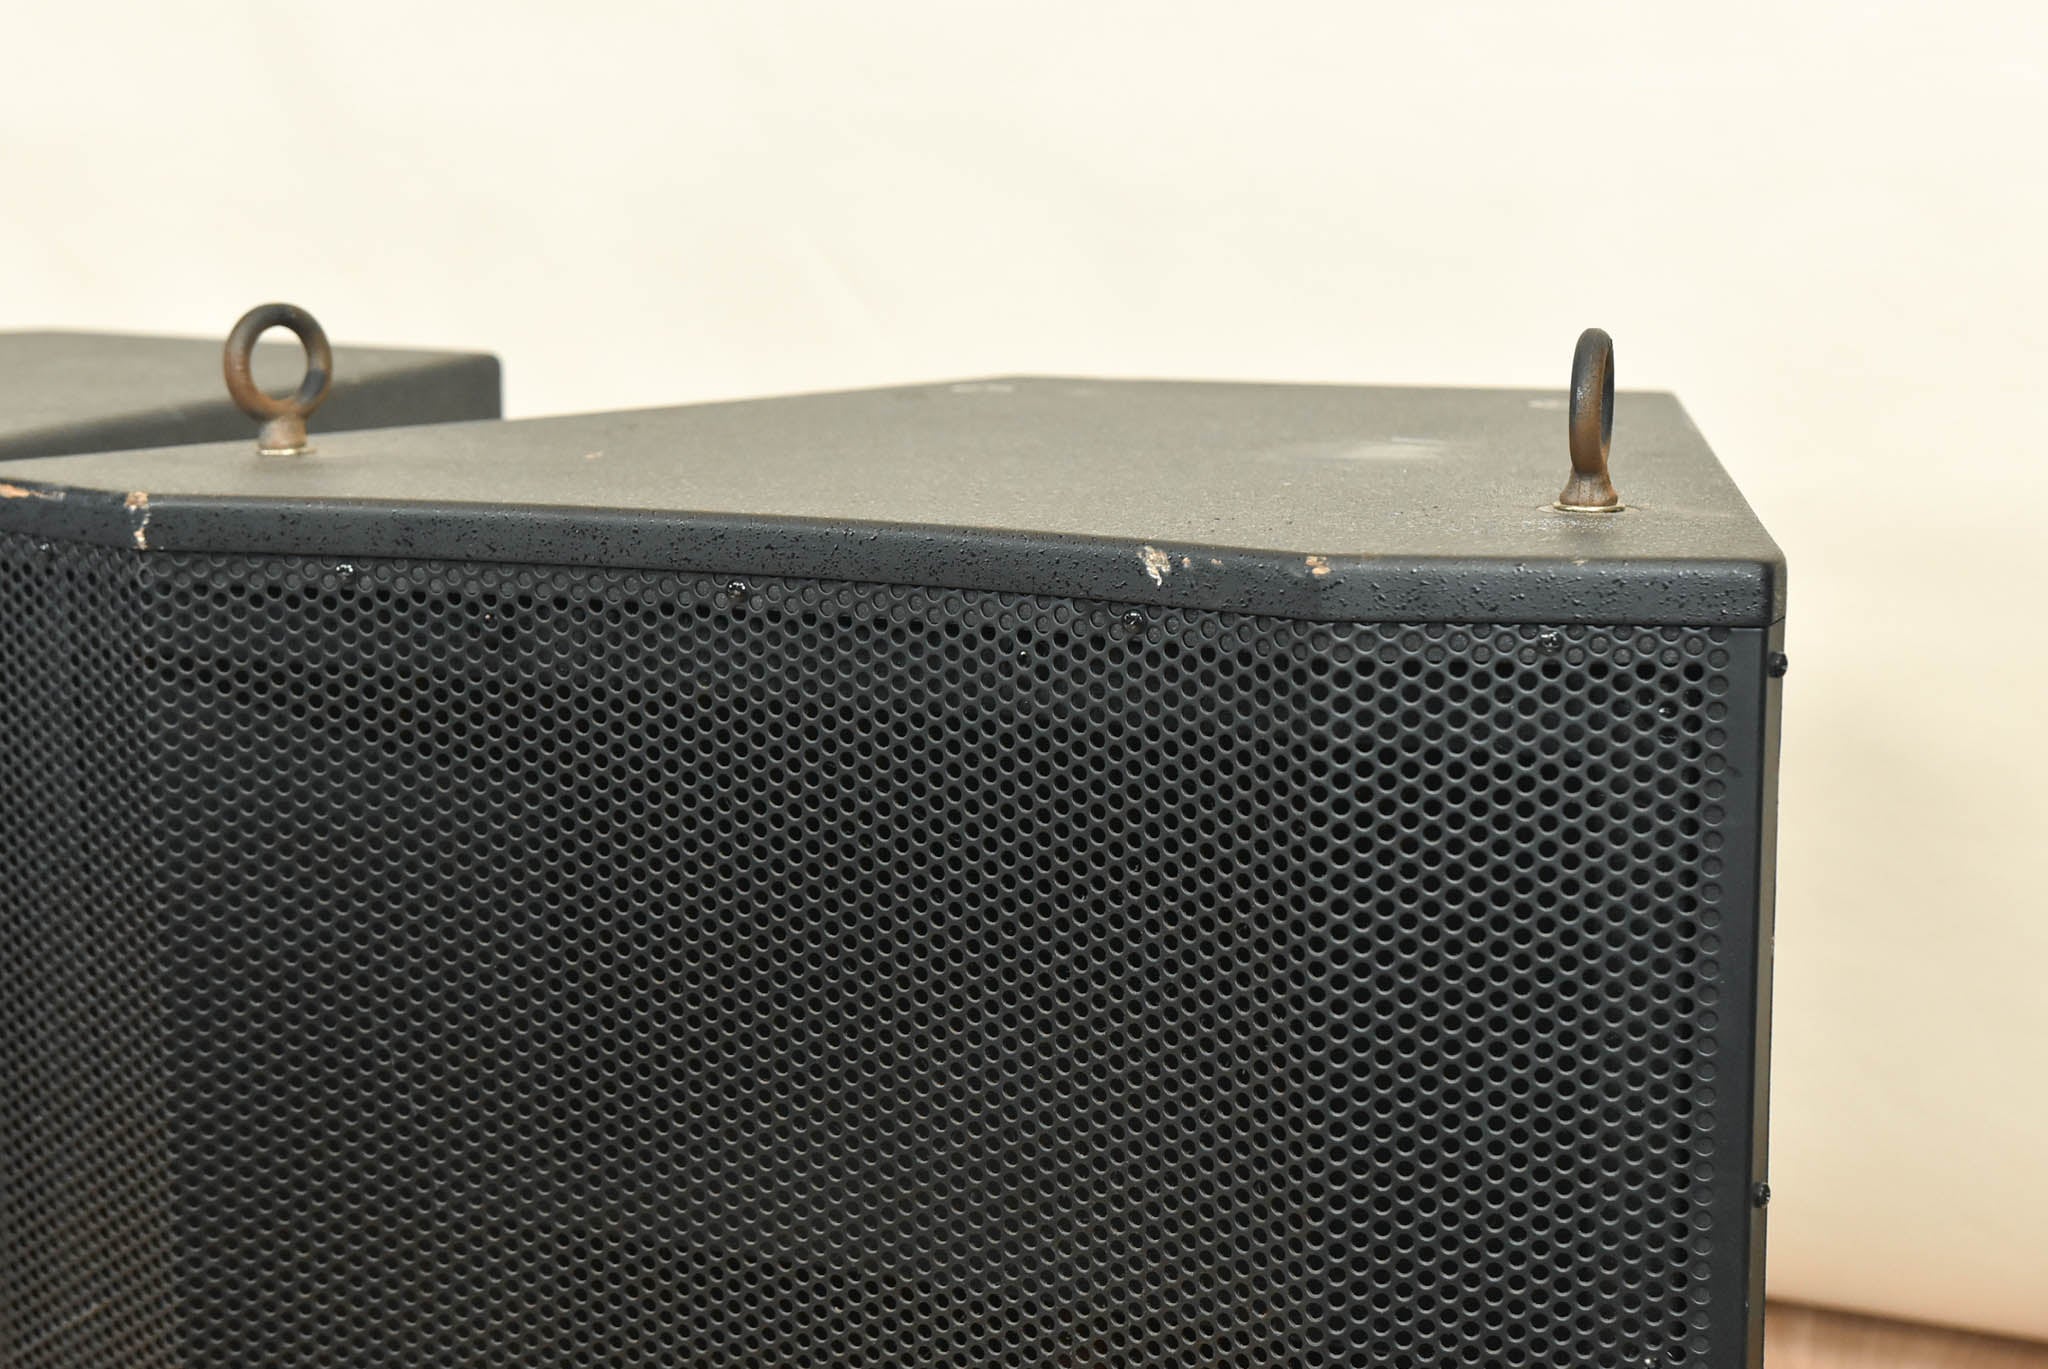 Bose LT 6400 Mid/High-Frequency Loudspeaker (PAIR)